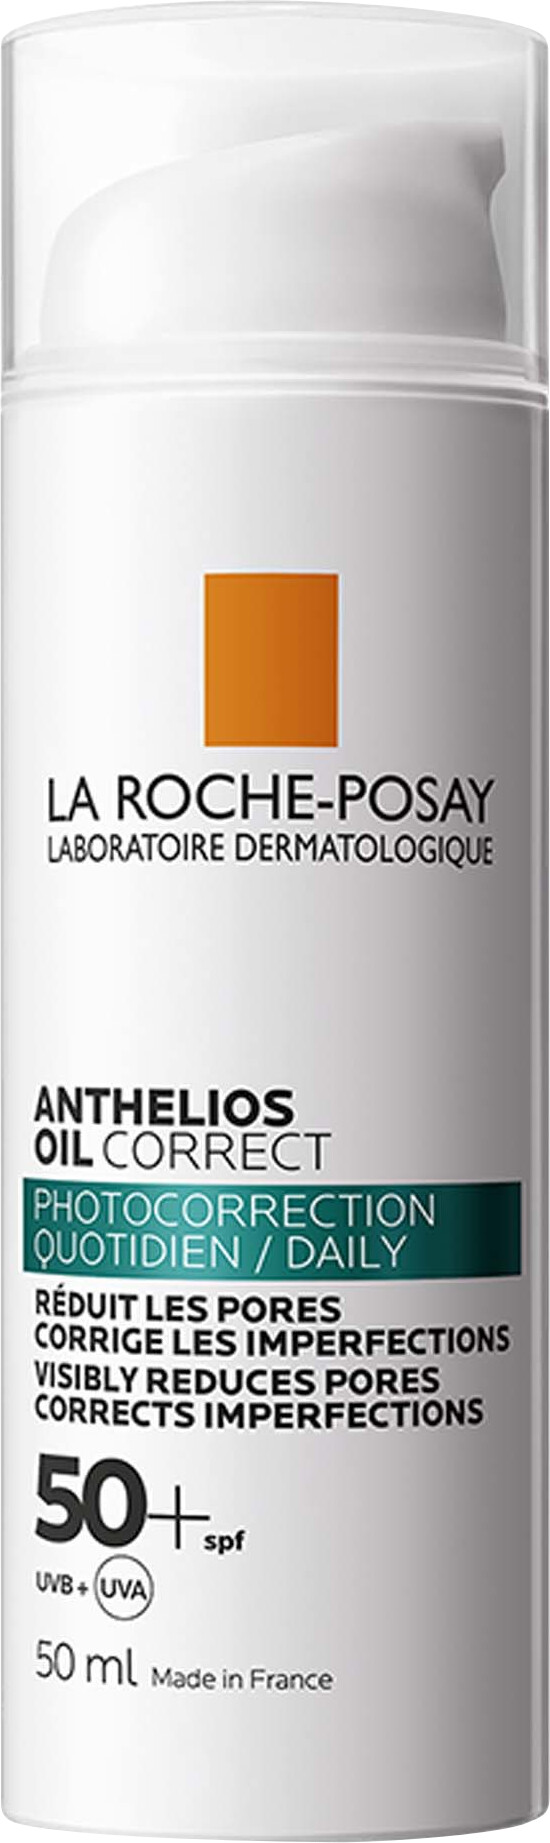 LA ROCHE-POSAY ANTHELIOS Oil correct SPF+50 50 ml